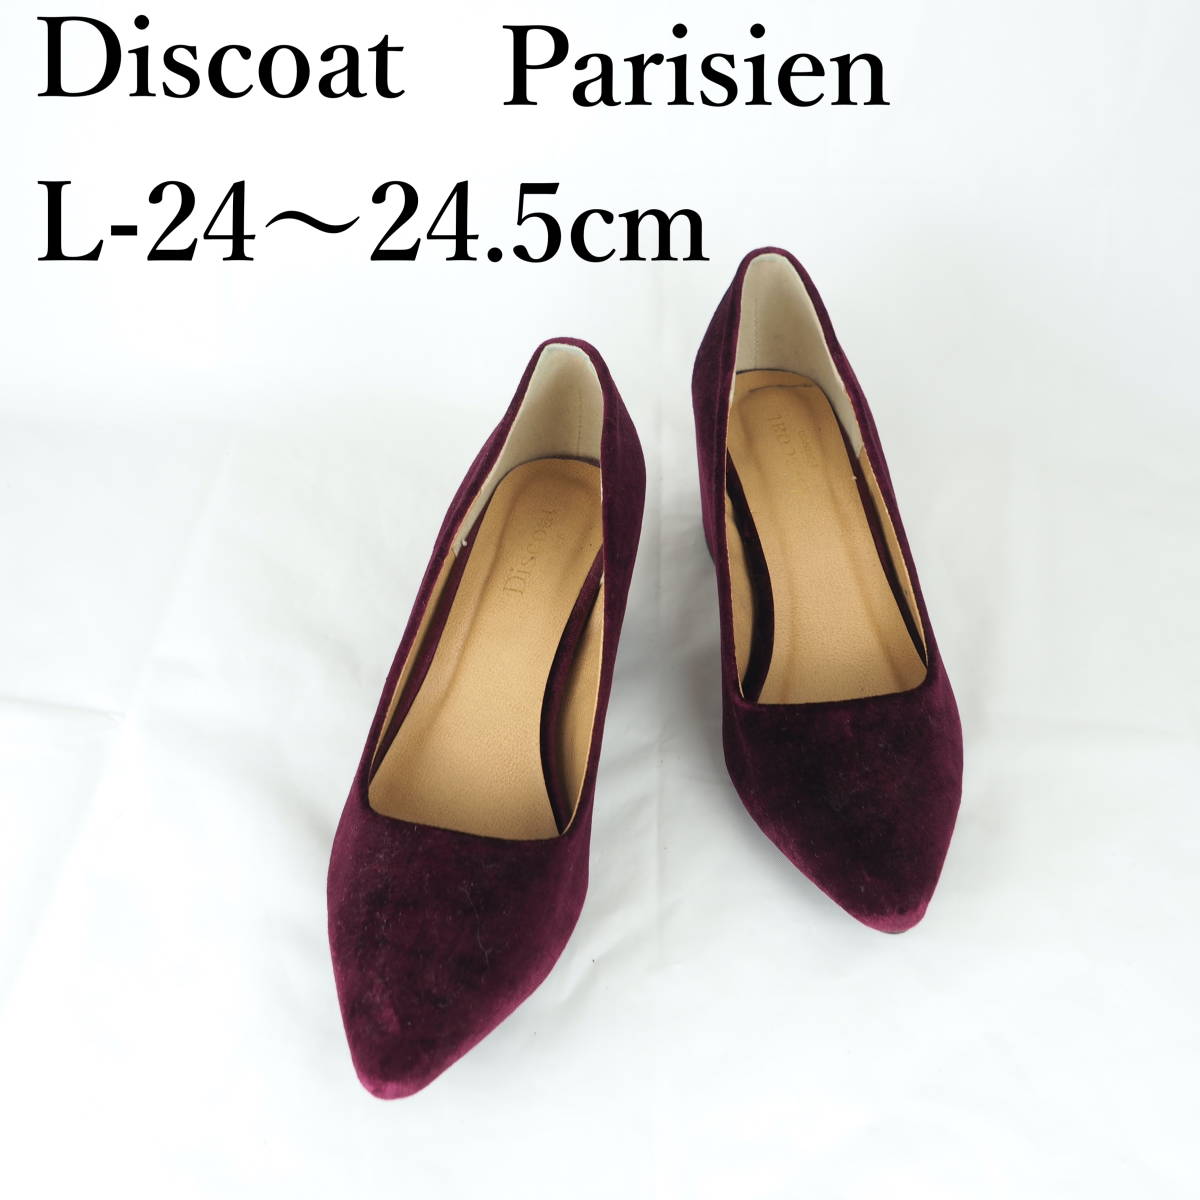 LK9000*Discoat Parisien*Discoat Parisian*Ladies Pumps*L-24-24.5 см*вино красным